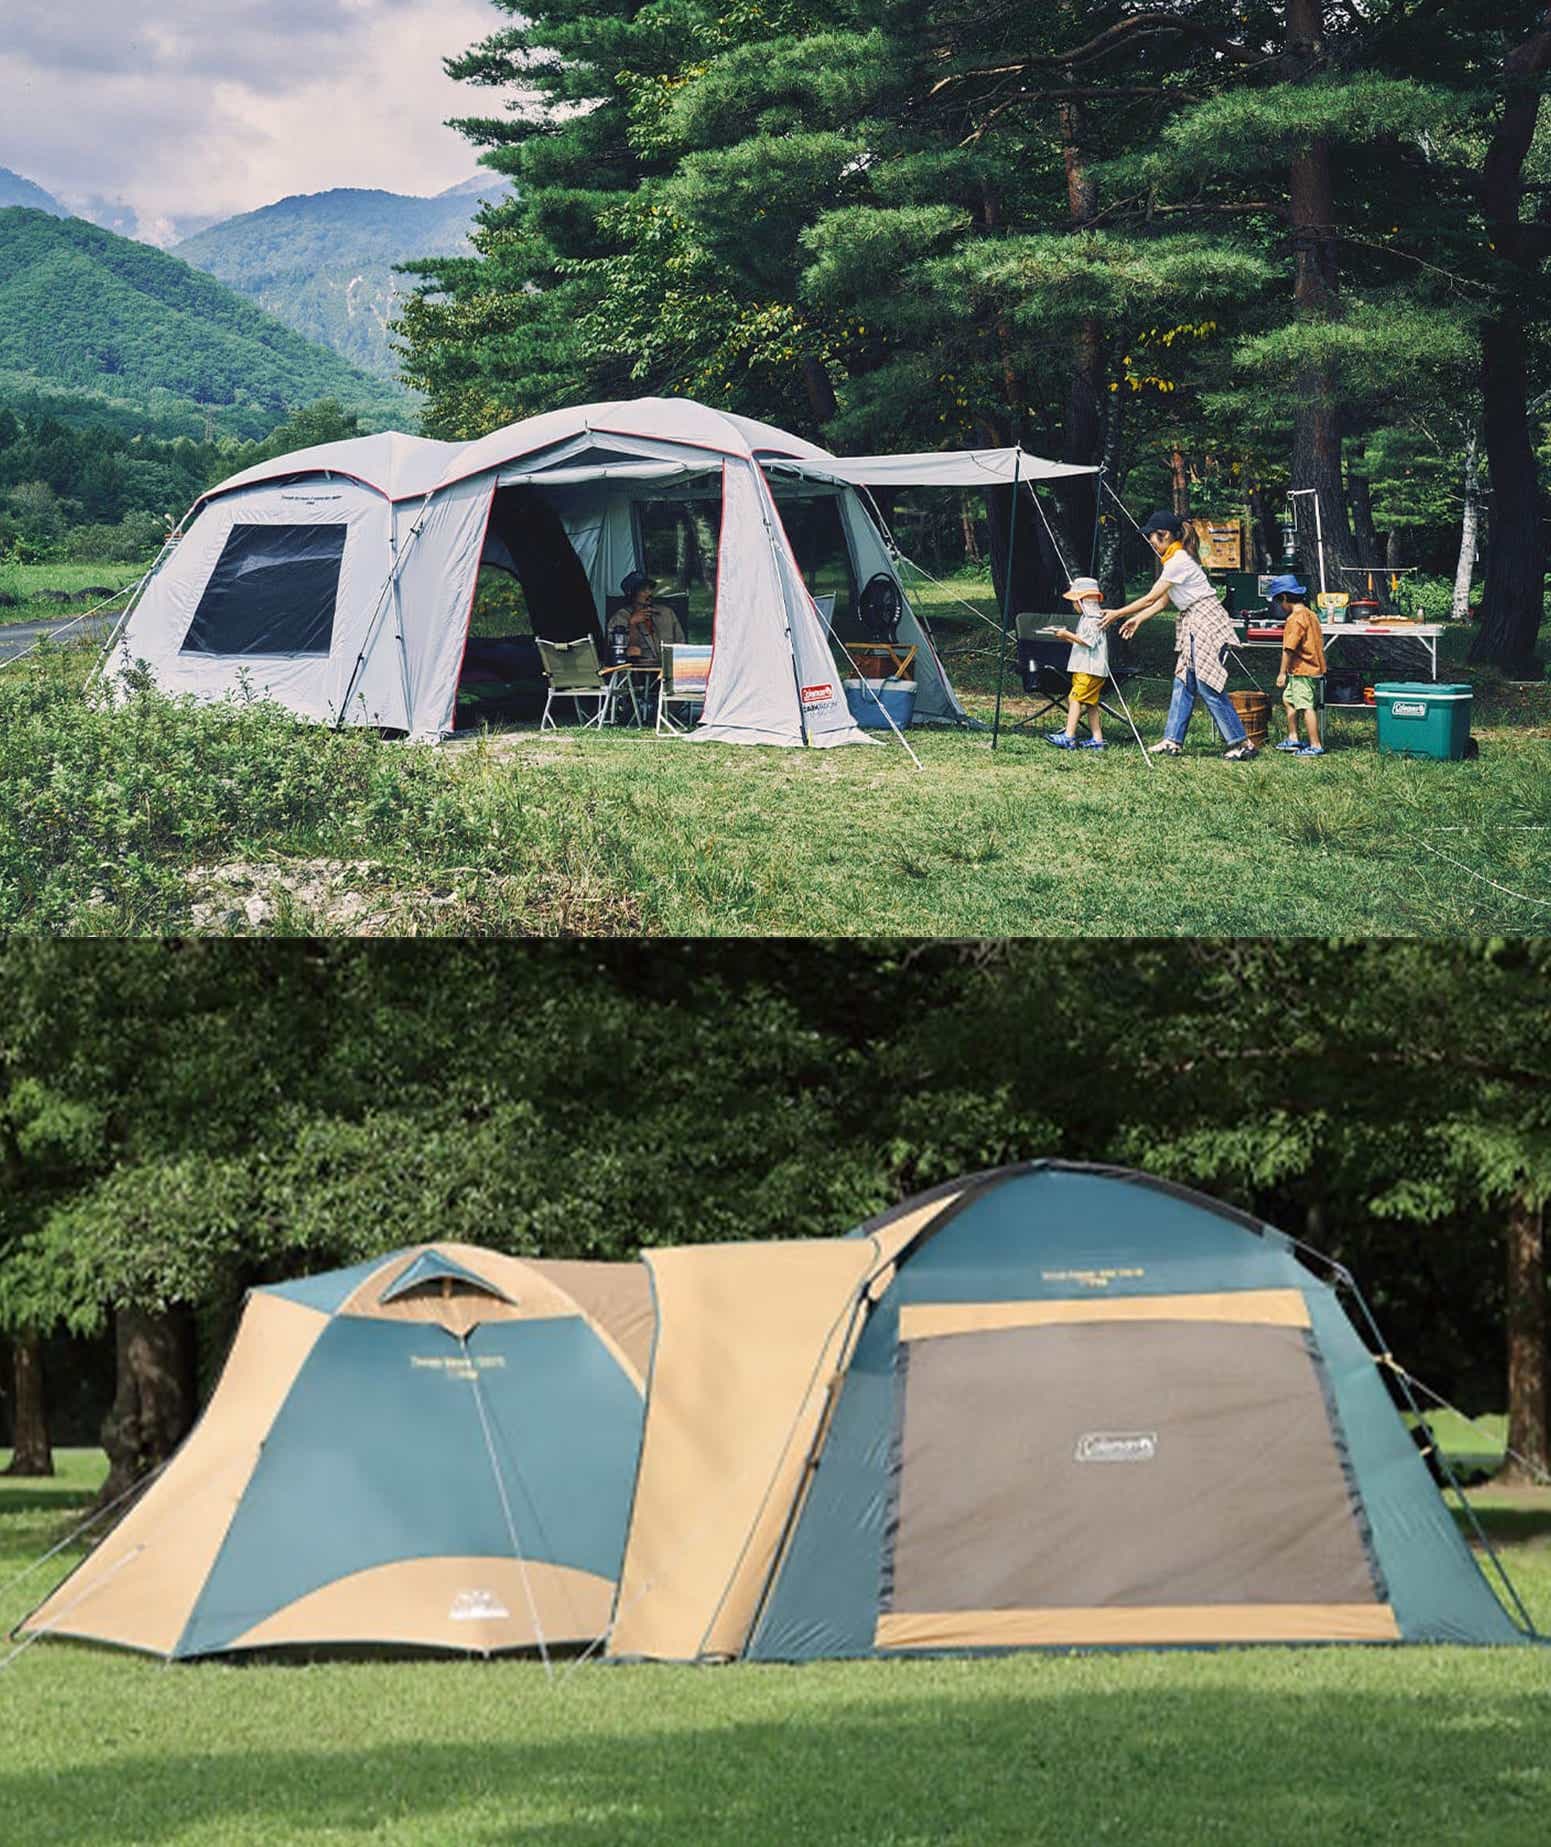 2ルームテントと連結テントタープの比較